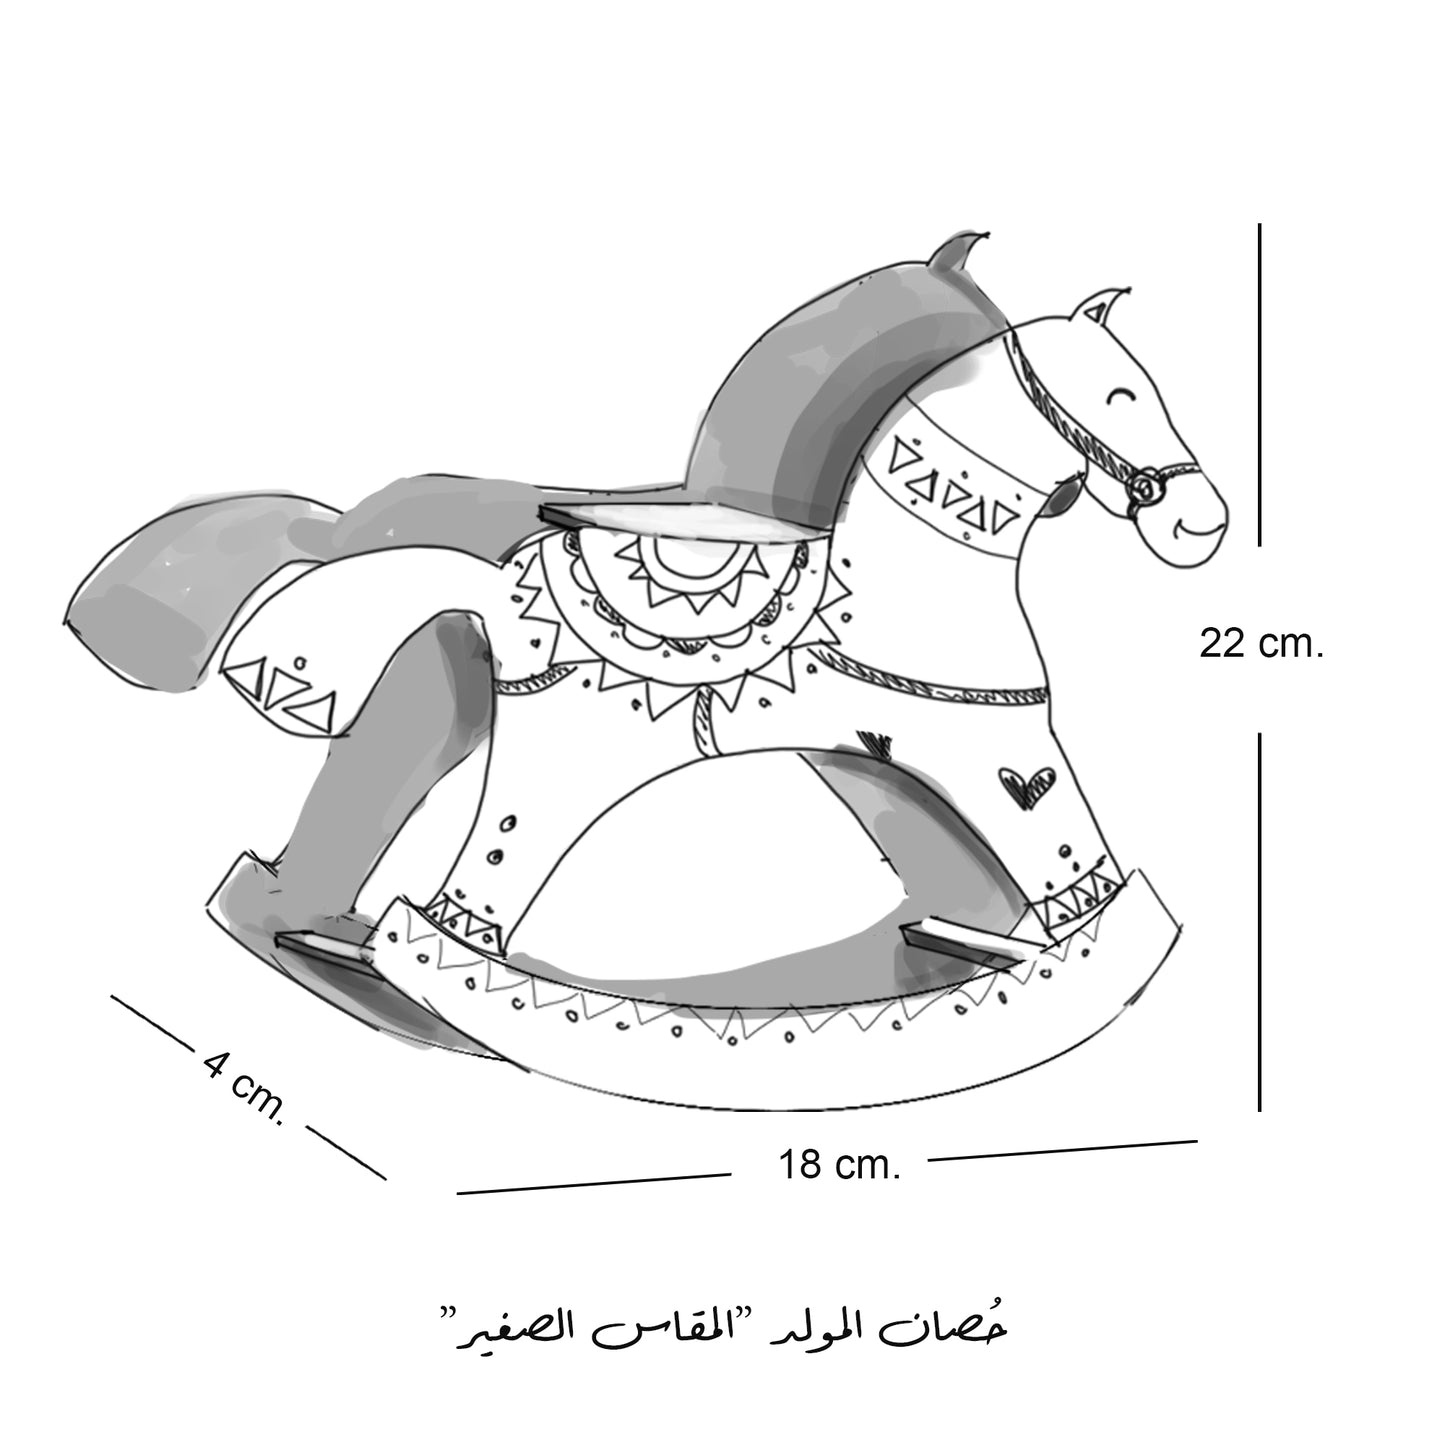 حُصان المولّد -مقاس صغير- ٥.٥*٢٣*١٨.٥ سم مولد ٢٠٢١